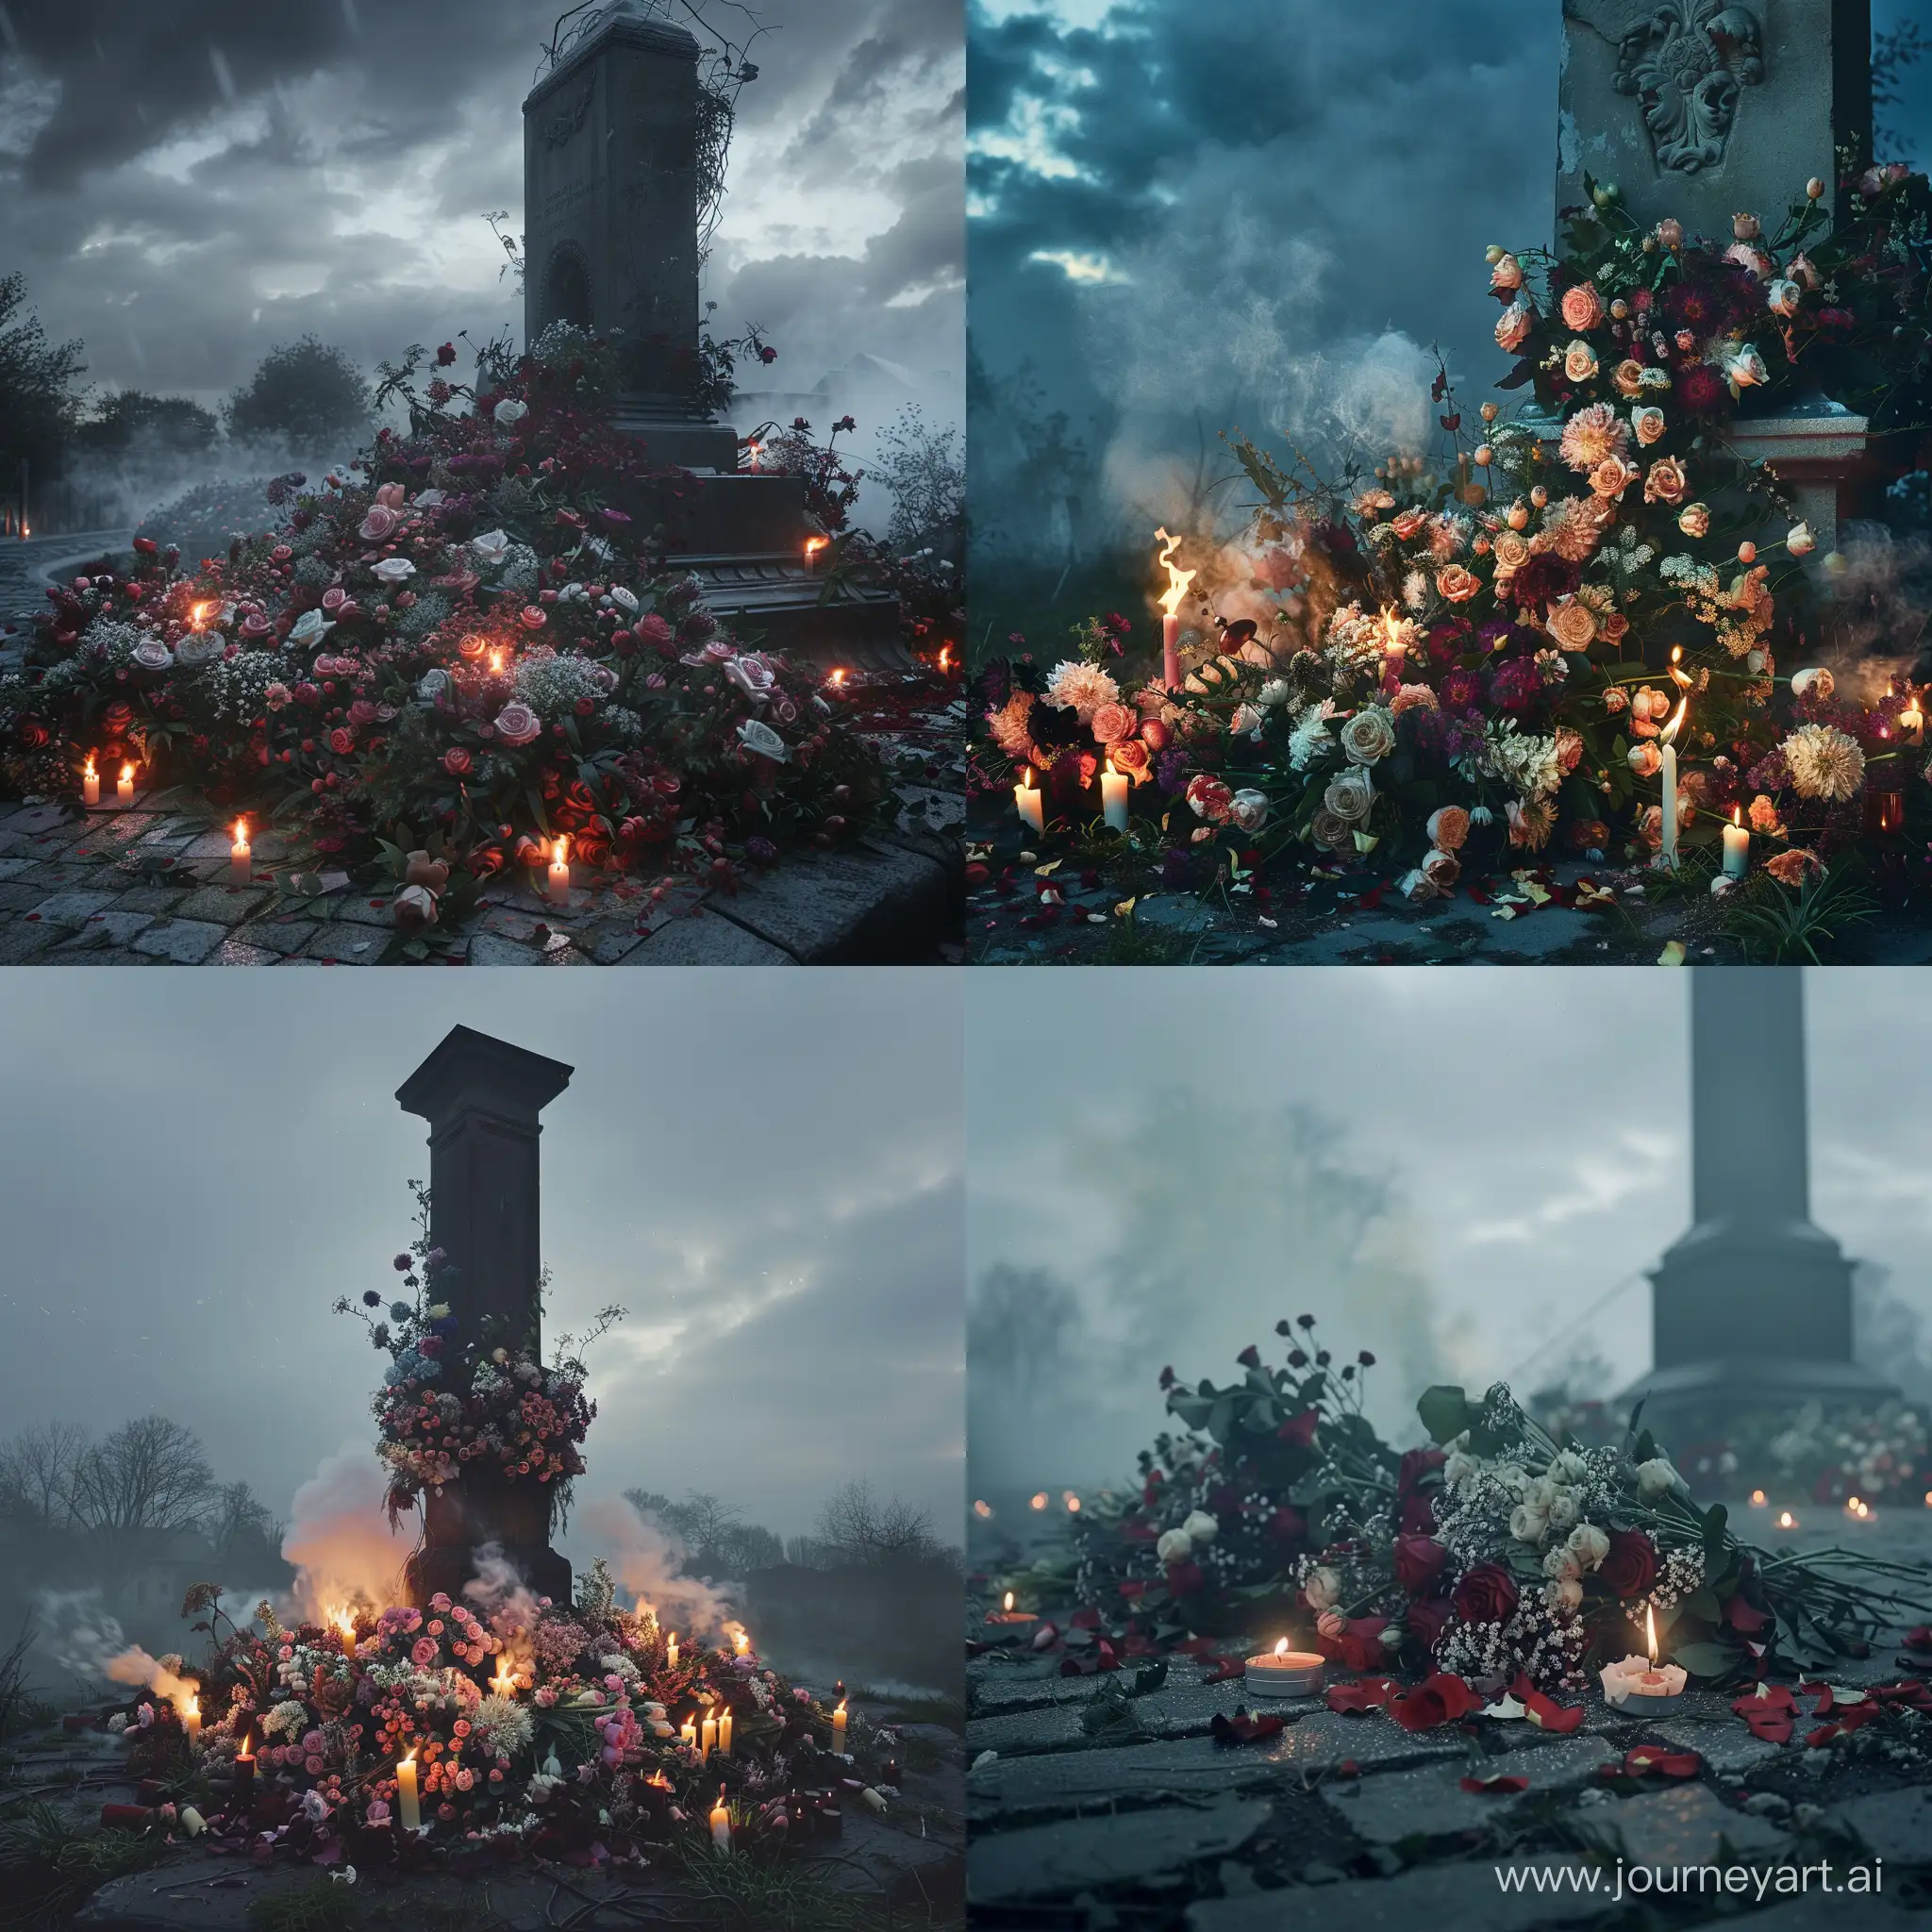 Возложенные букеты цветов и горящие свечи у подножия памятника, скорбная обстановка, фотография, гиперреализм, высокое разрешение